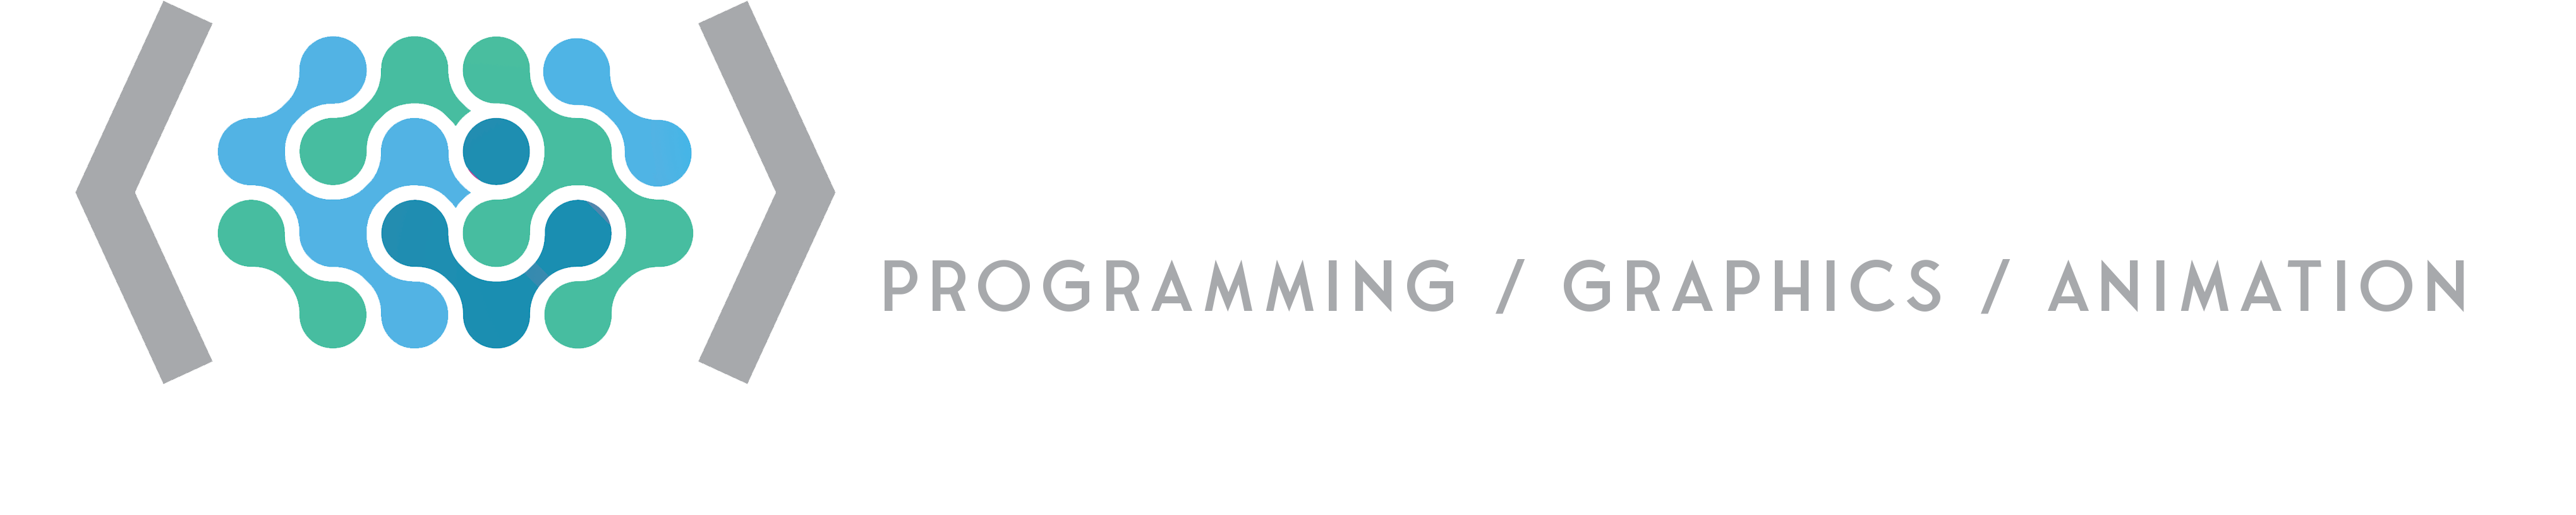 Athena Blue Home Page